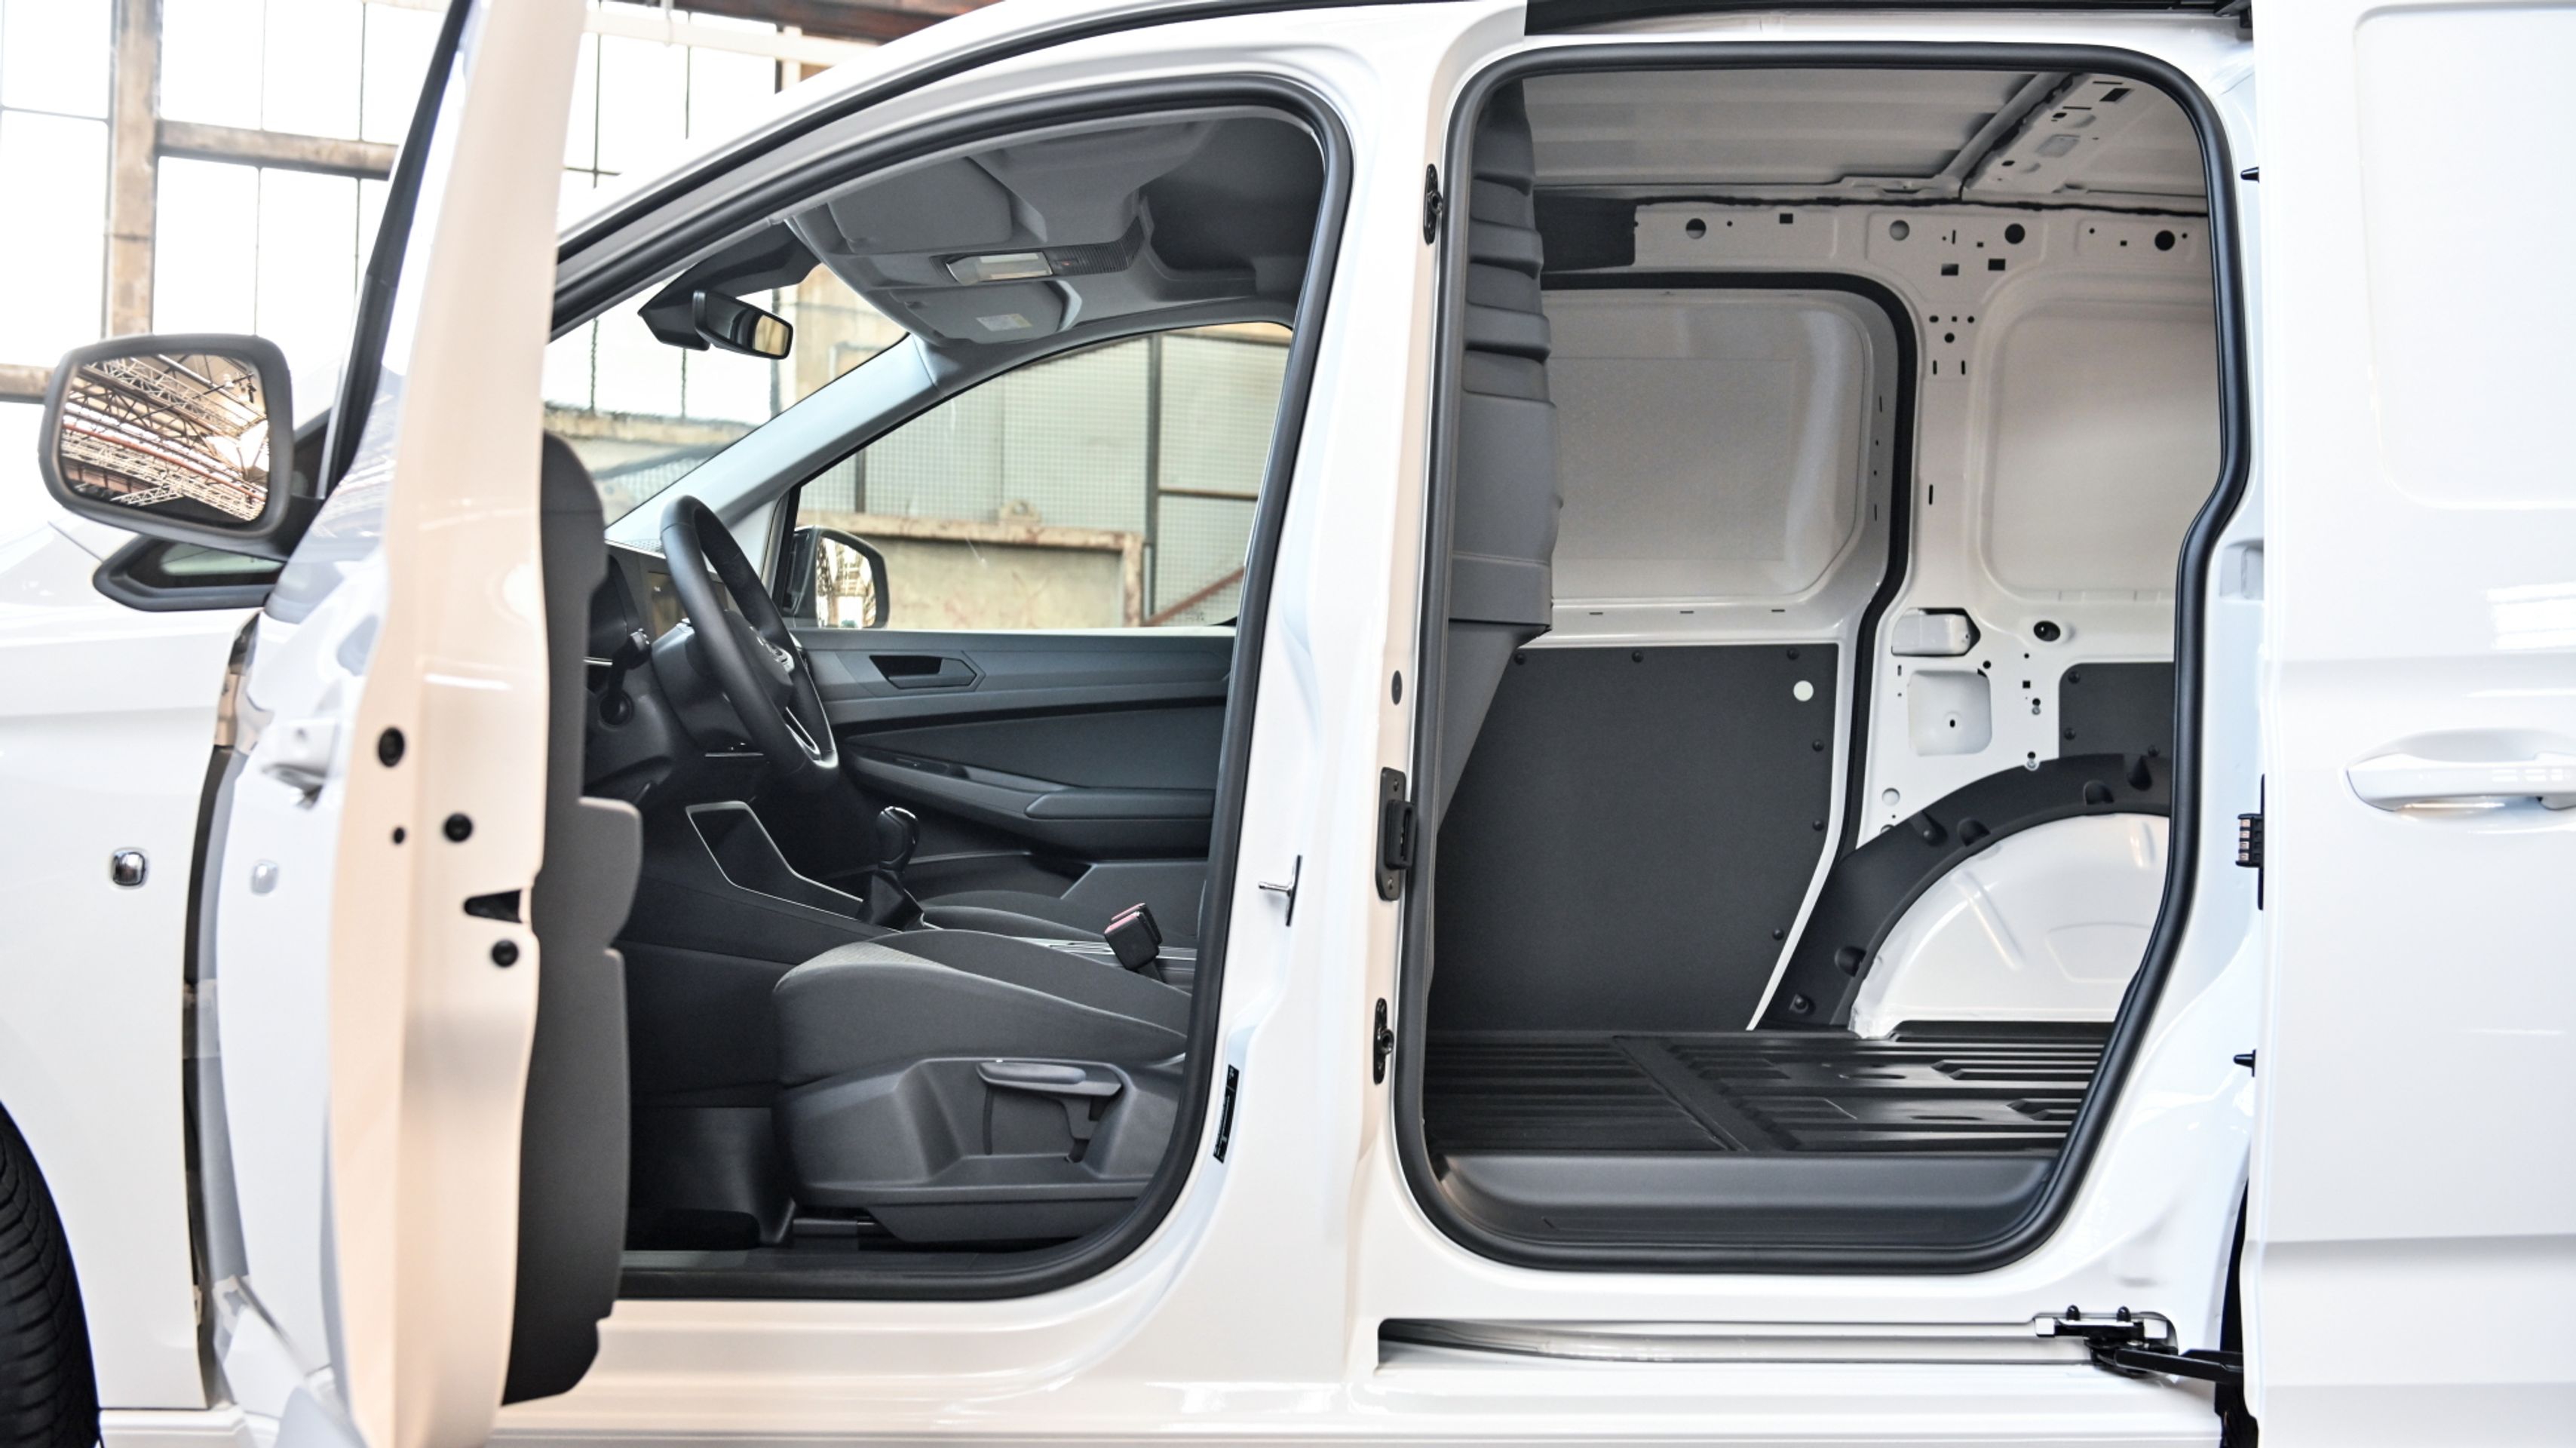 Volkswagen Caddy Cargo - 10 - Fotogalerie: Nový Caddy jako dříč, obytňák i auto pro rodinu (38/43)